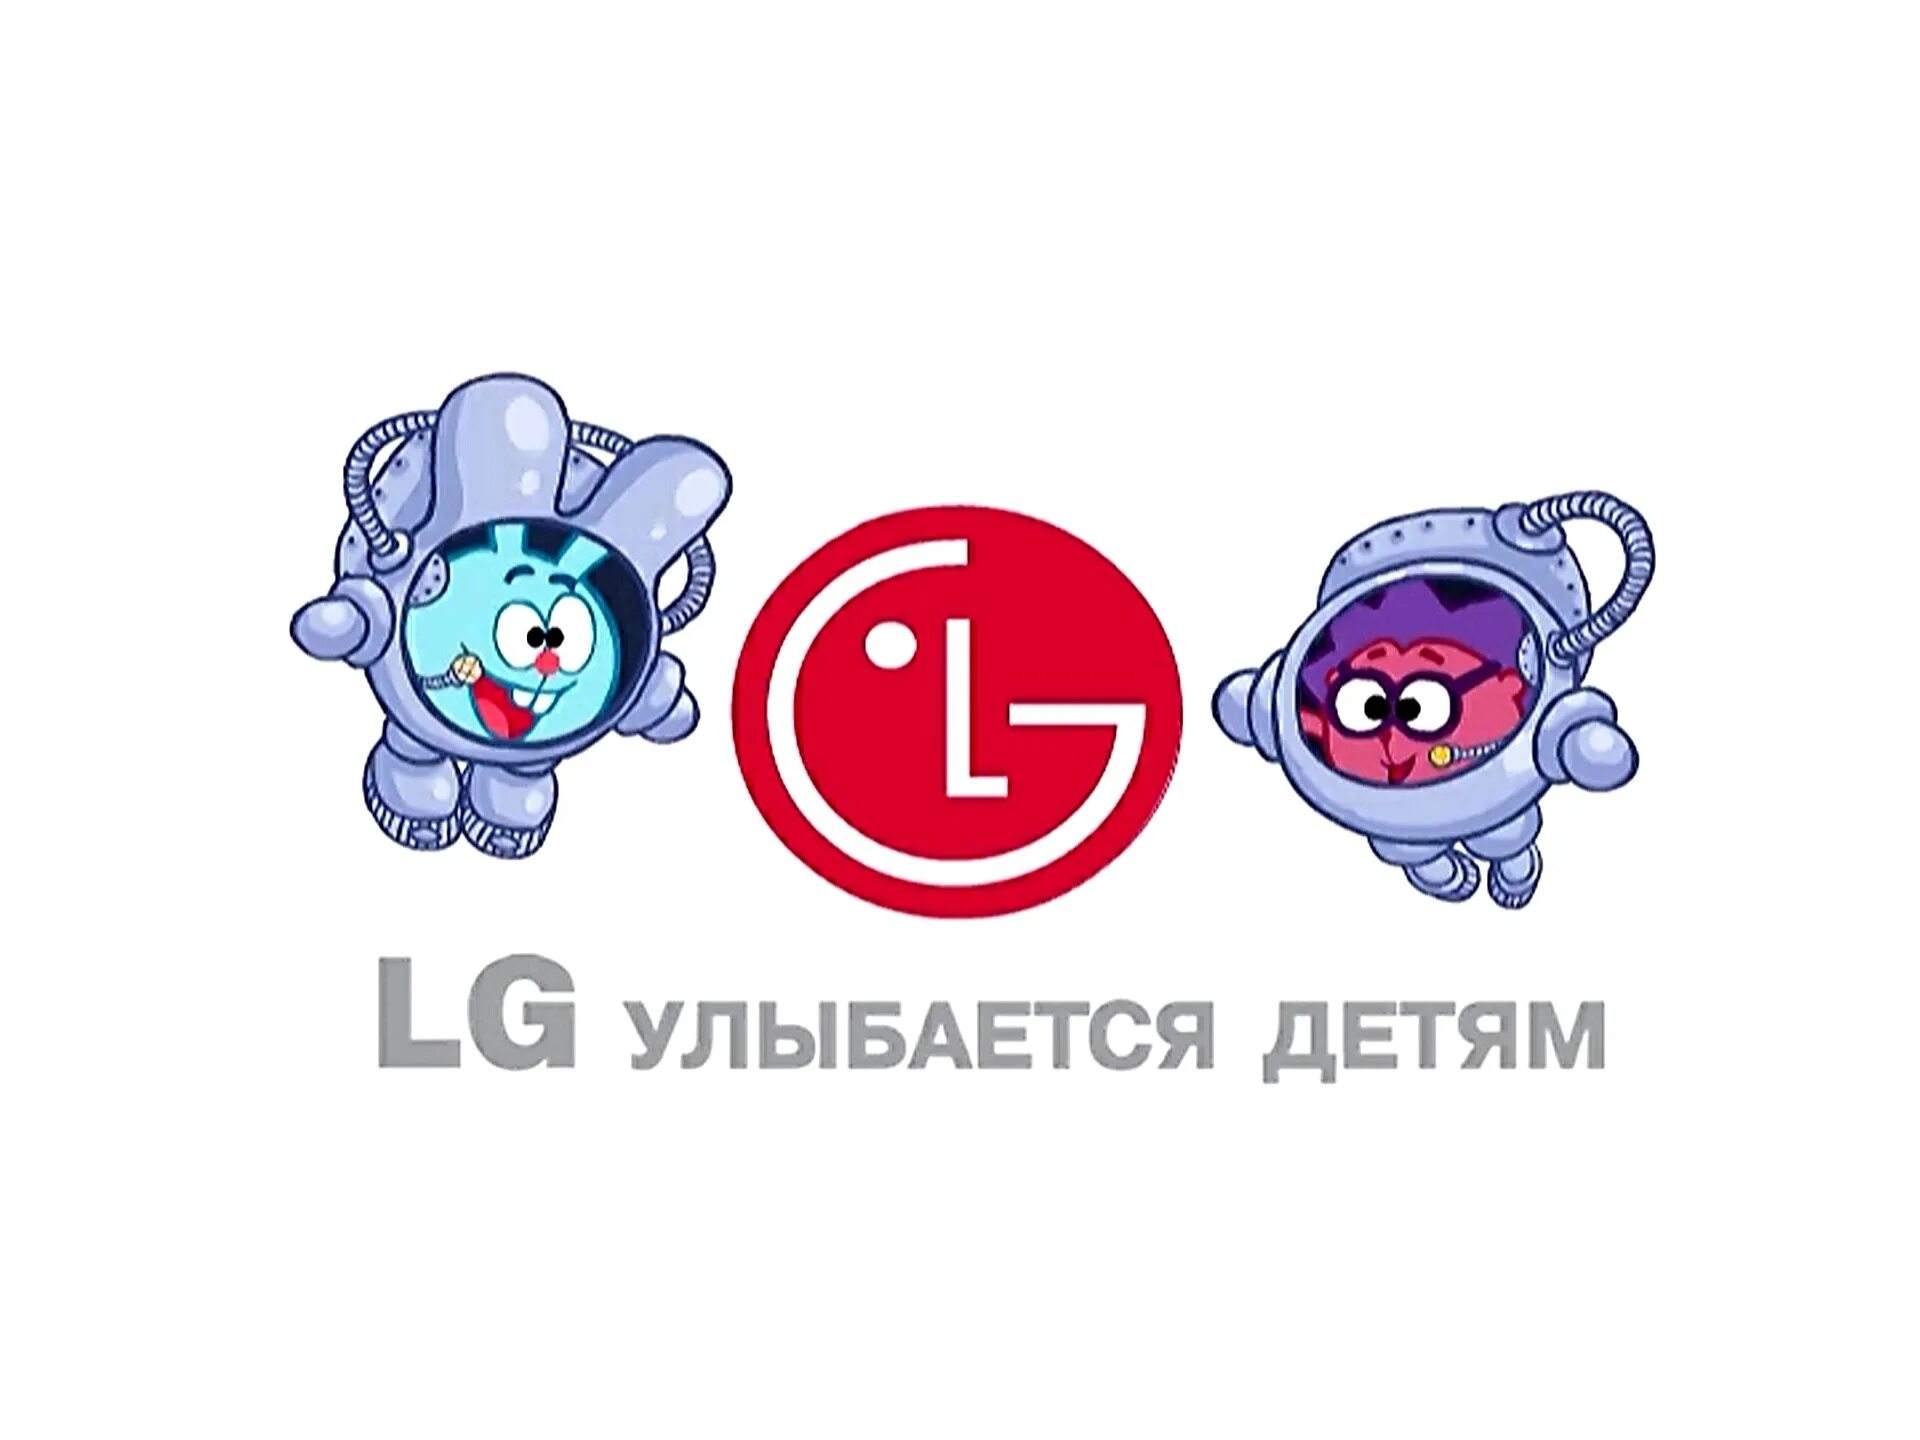 Запусти мир смешариков. Смешарики LG. Смешарики реклама. Смешарики LG улыбается детям. Смешарики реклама LG.